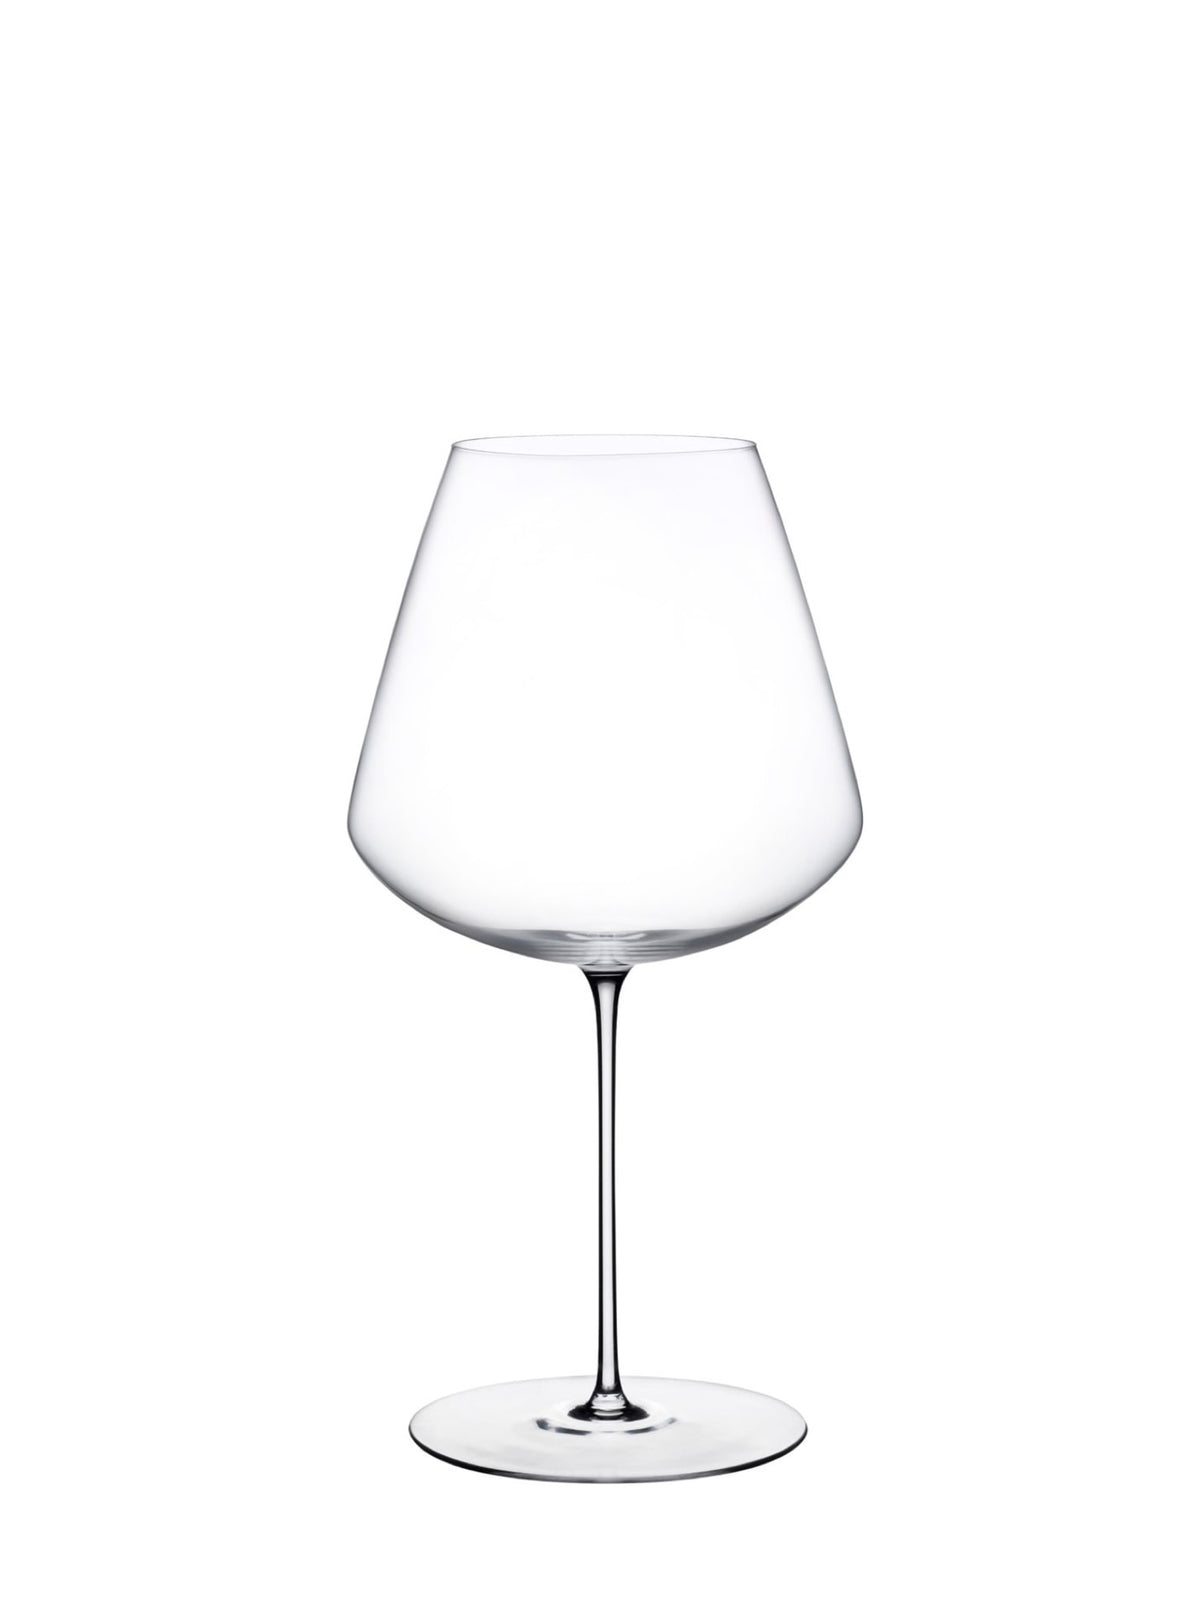 Smukt designet Stem Zero rødvin glas til at nyde dine foretrukne v